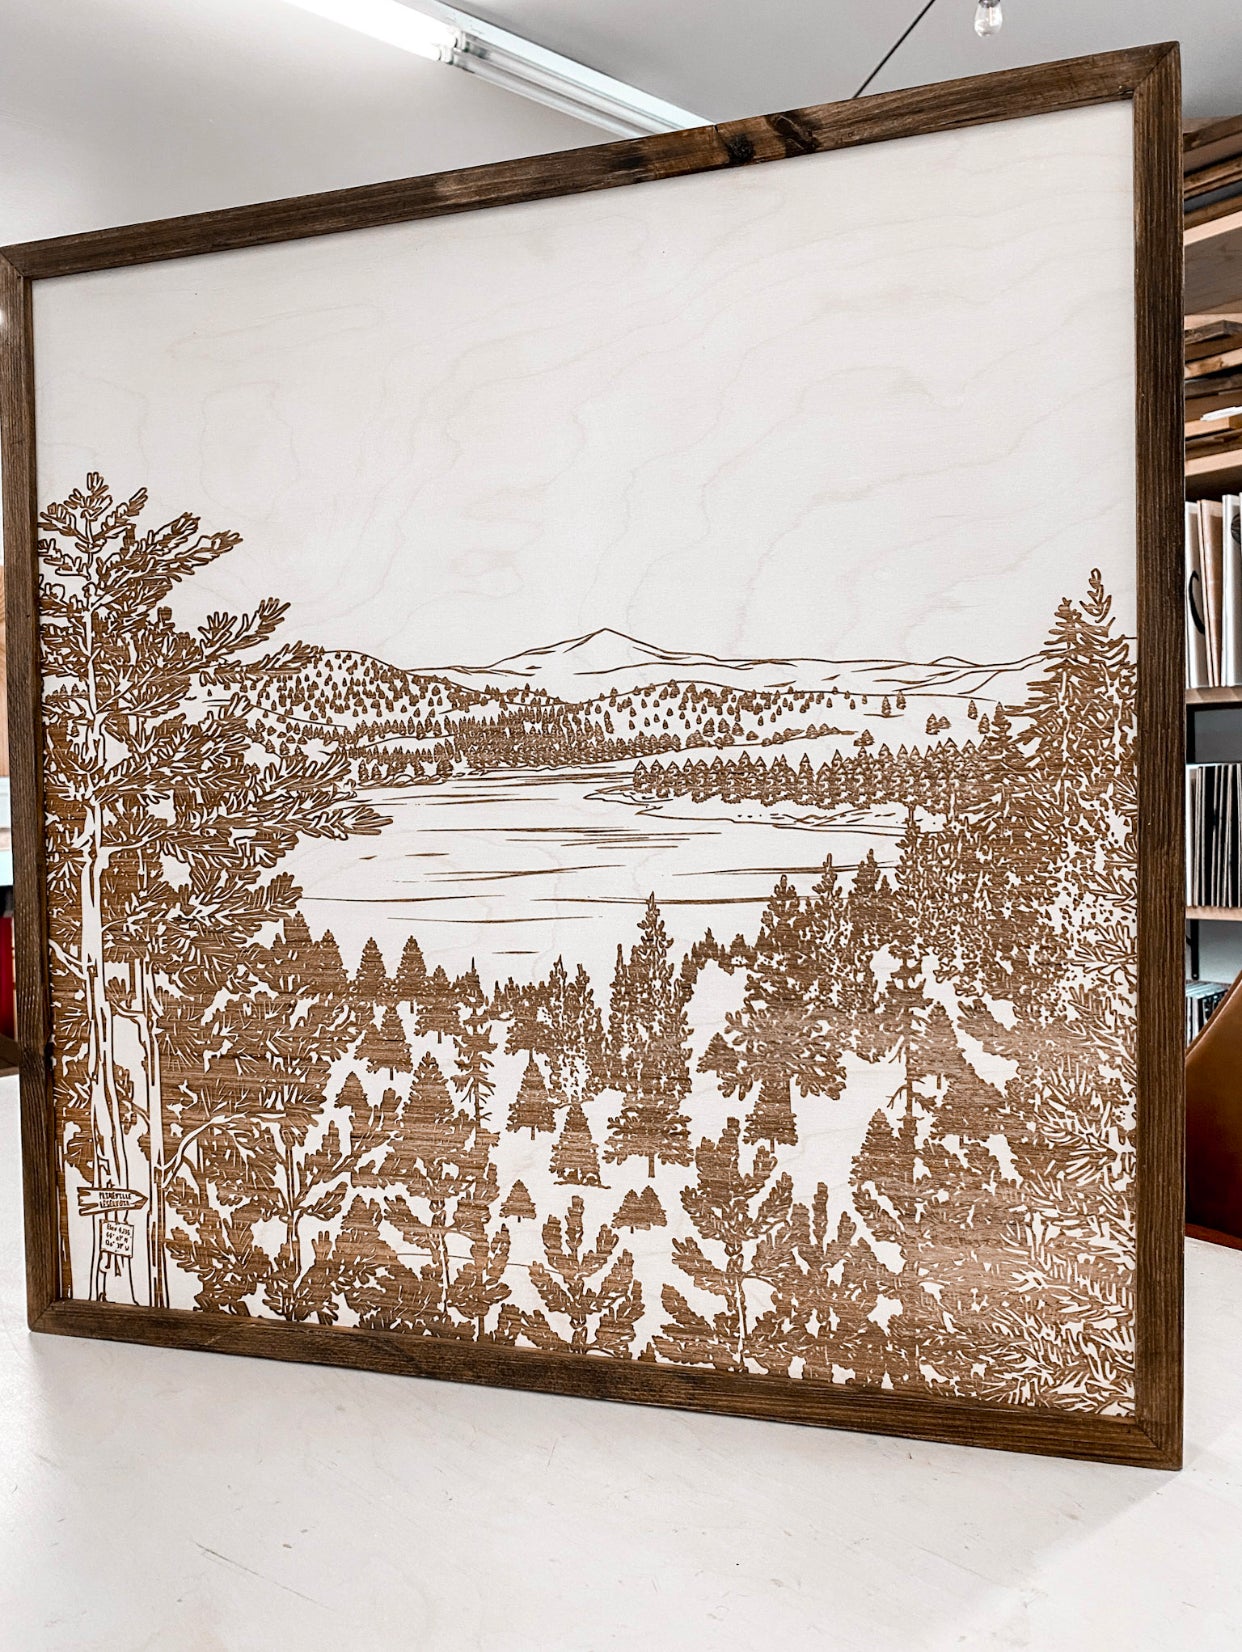 Prineville Reservoir Landscape Hand Sketched Engraved Wooden Artwork